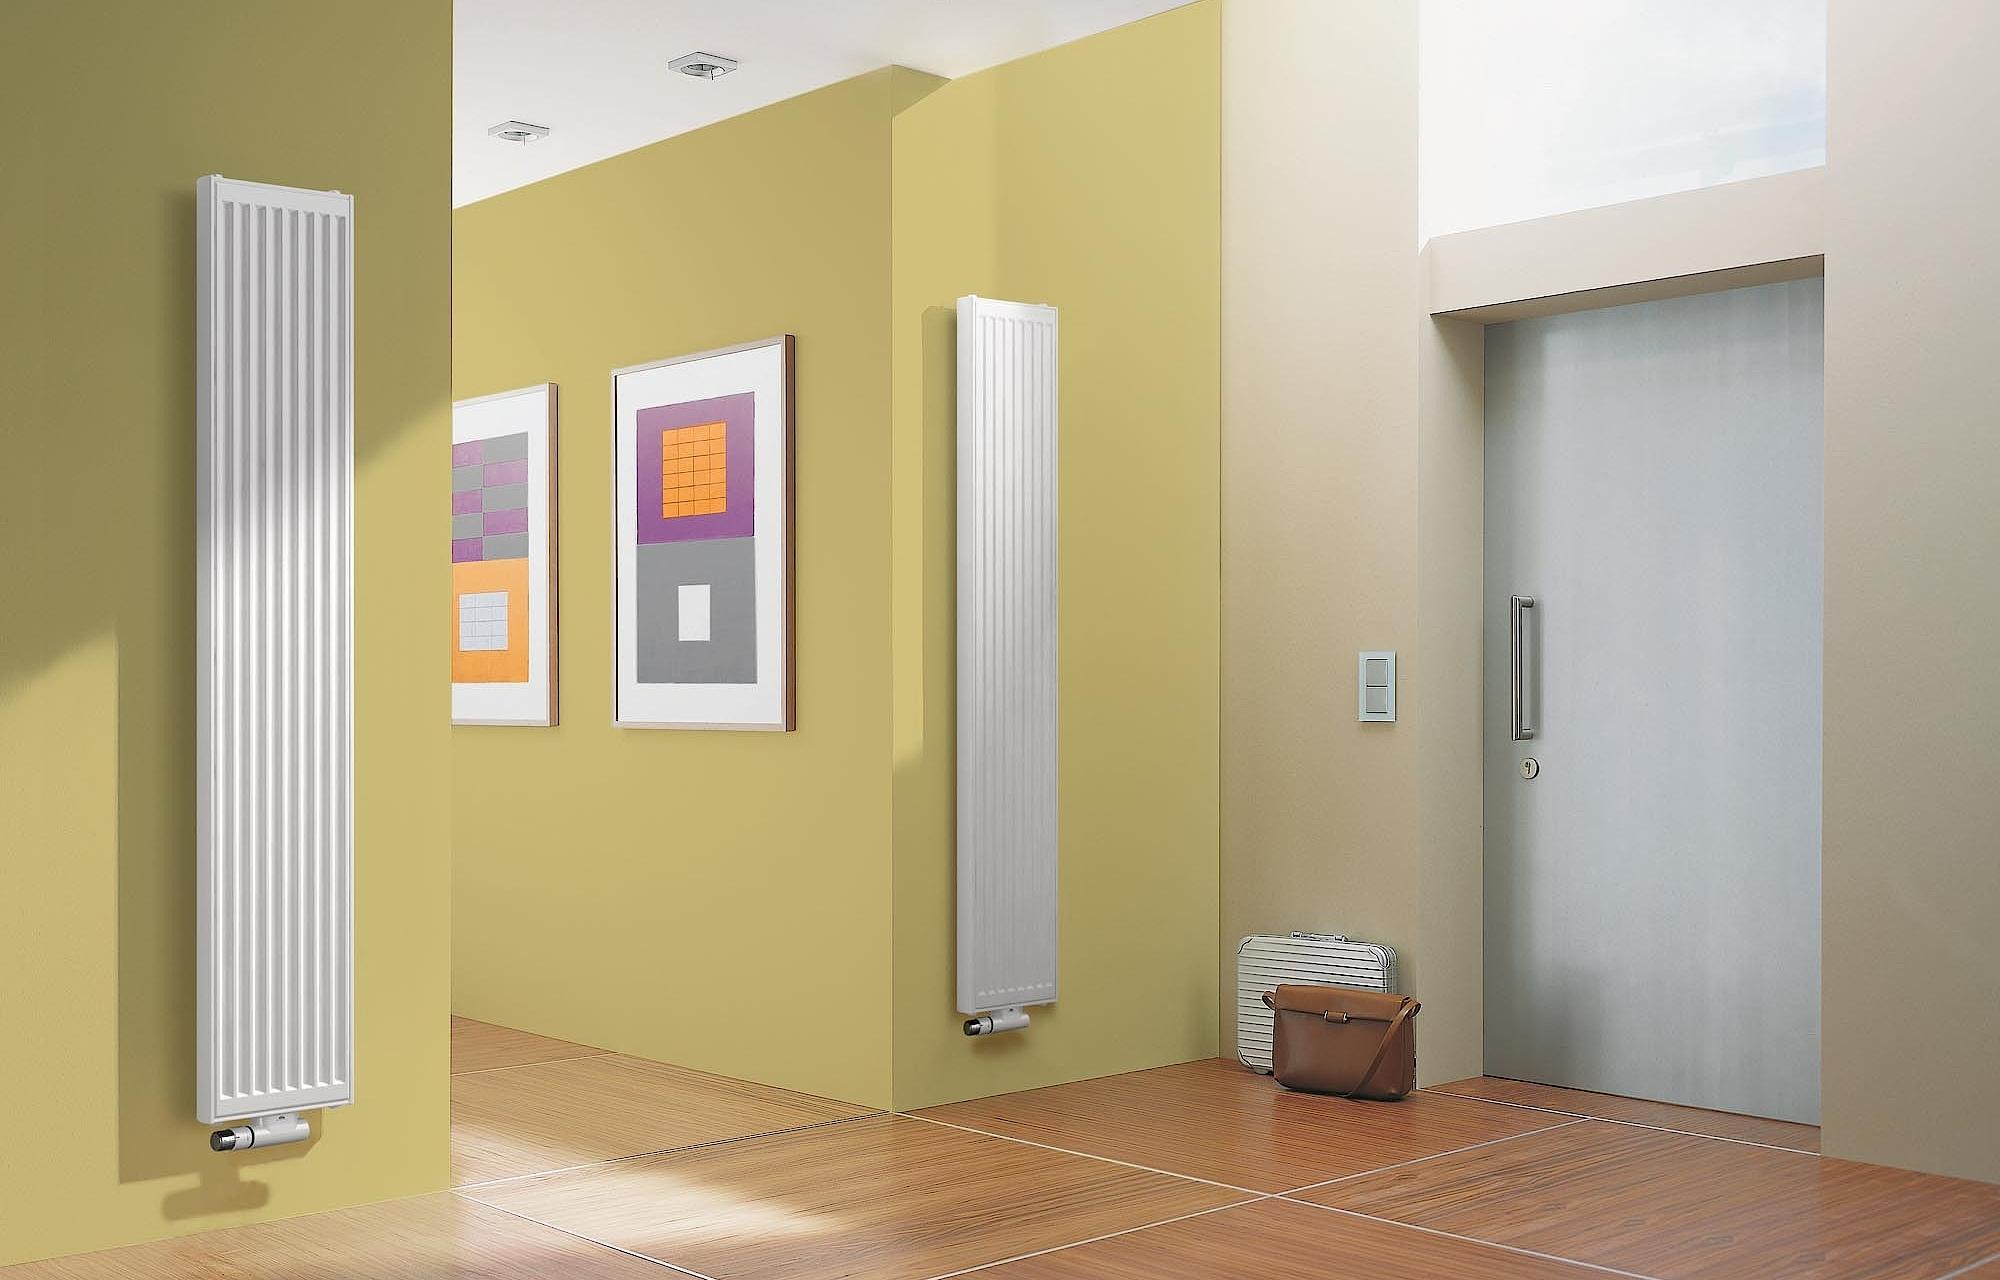 Kermi Verteo Profil paneļu radiators ar izteiksmīgu, profilētu izskatu.